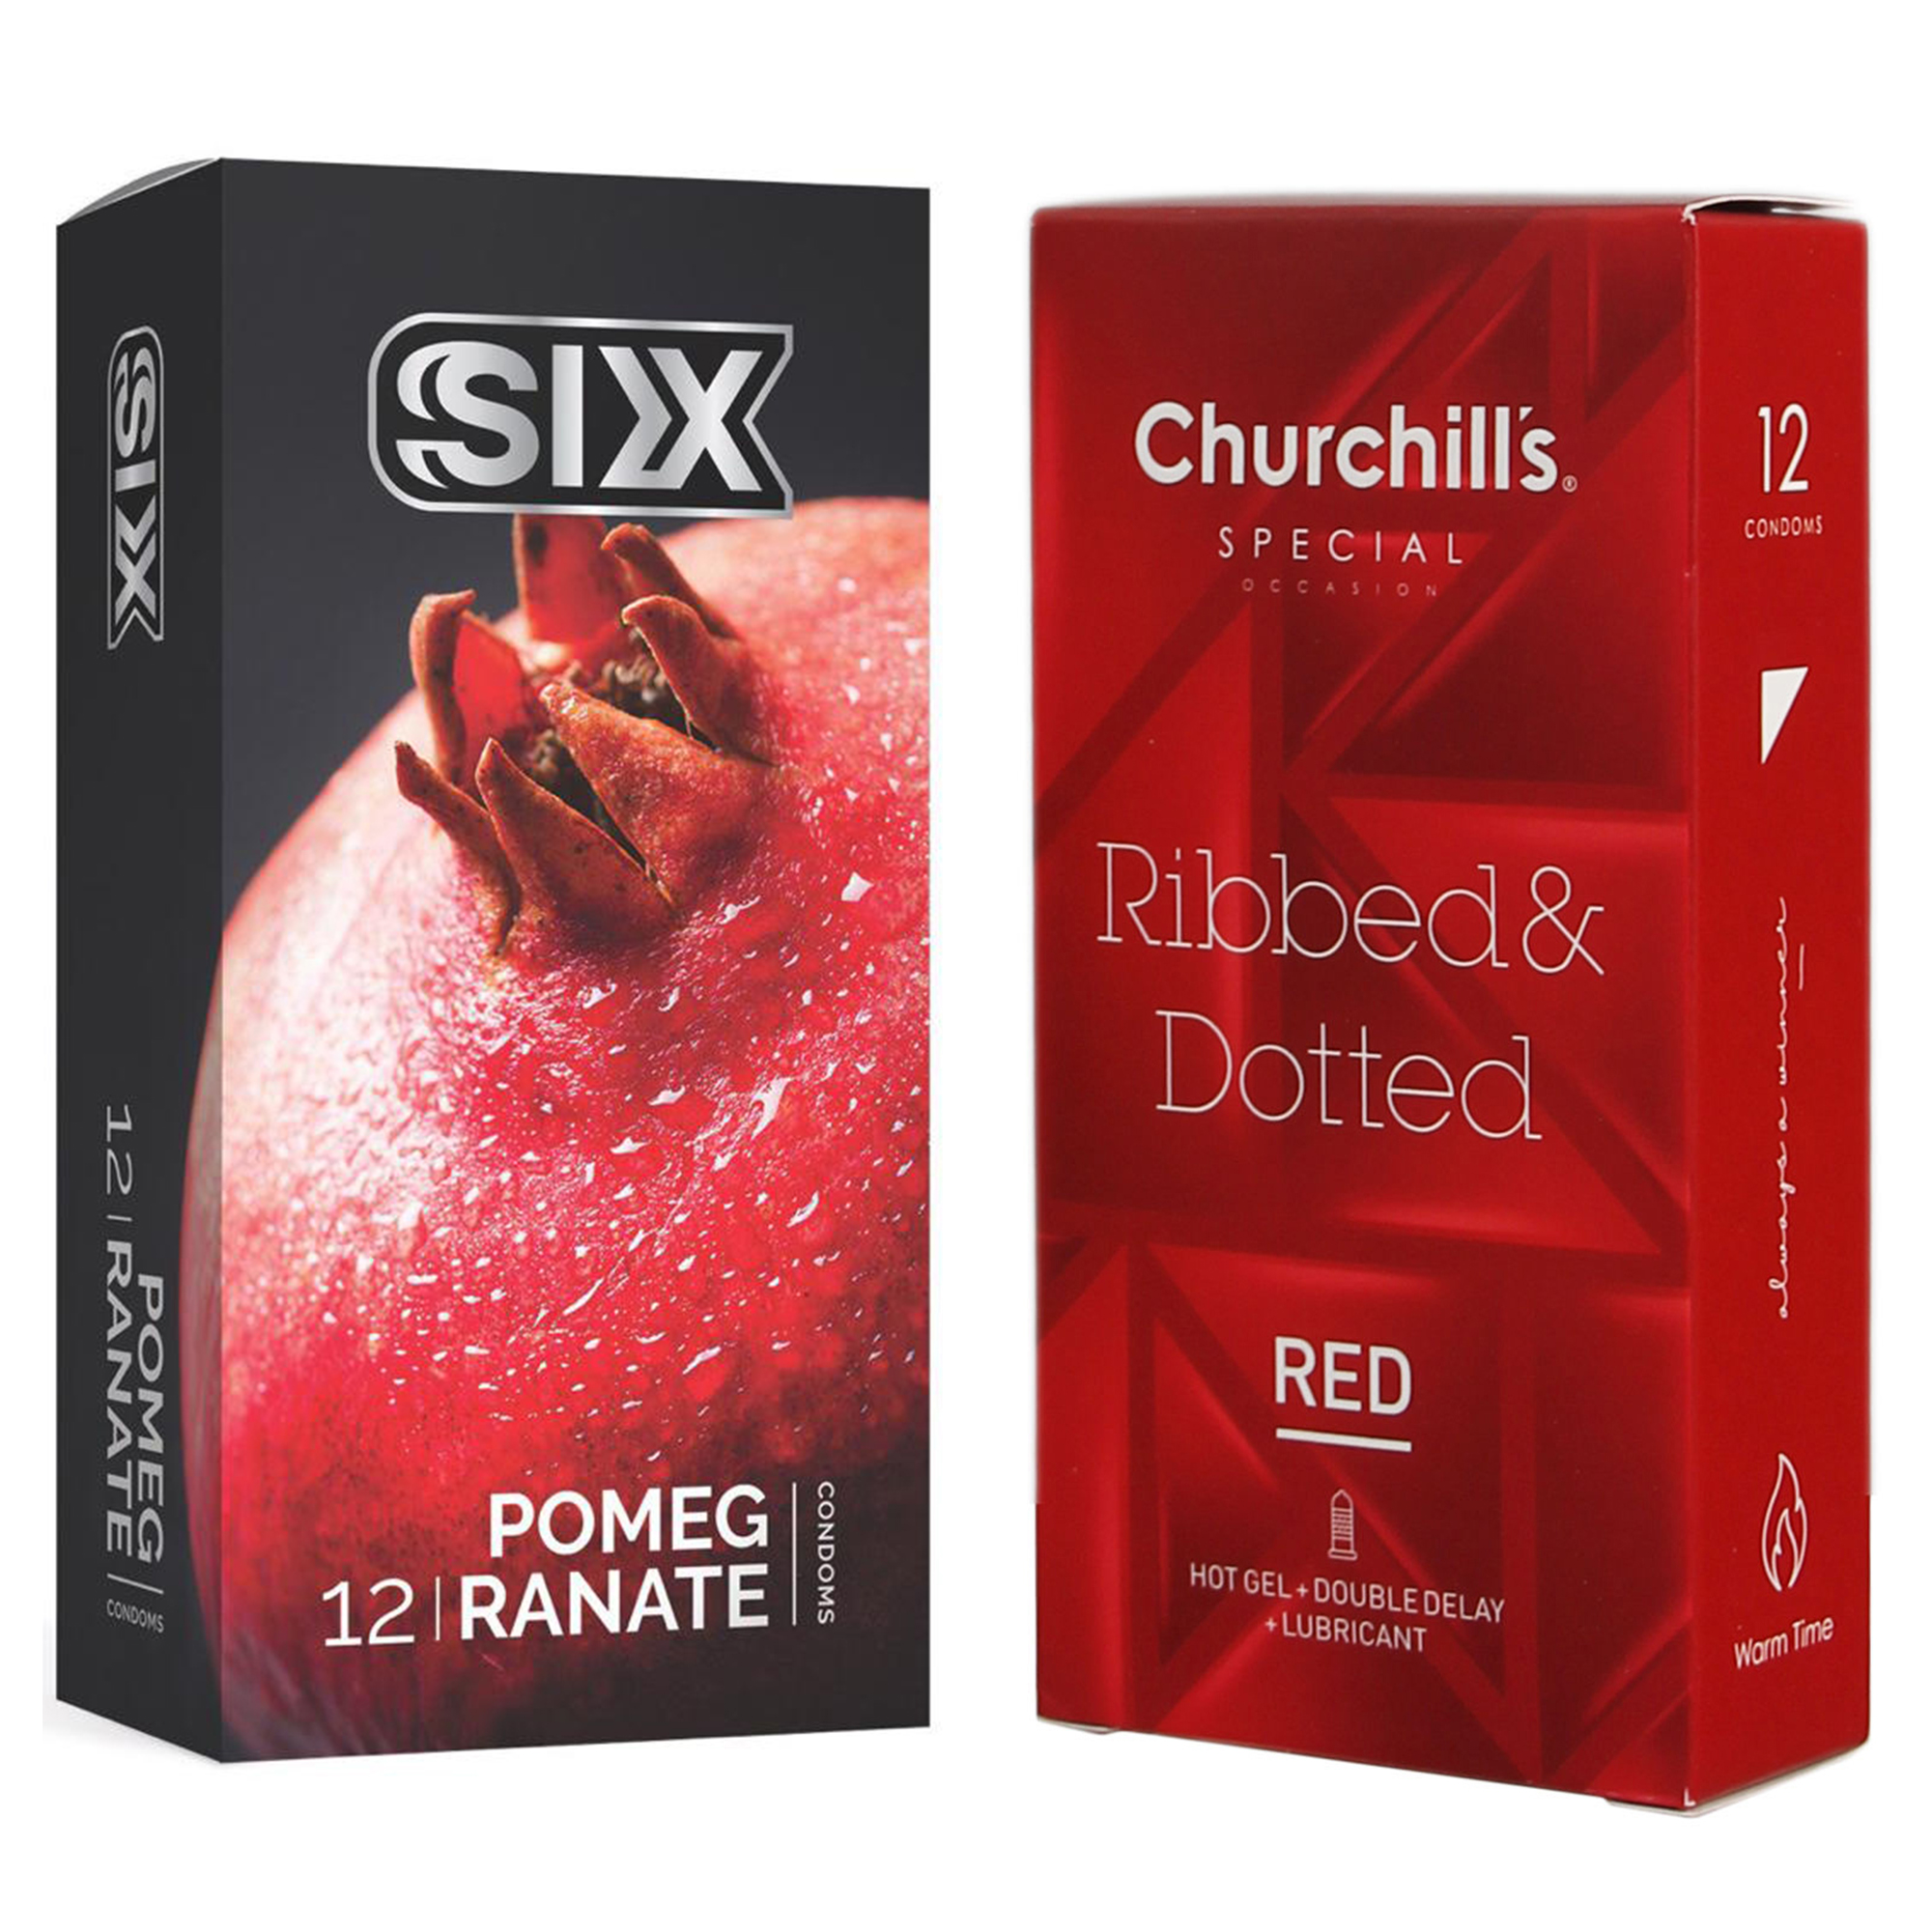 کاندوم چرچیلز مدل Ribbed & Dotted Red بسته 12 عددی به همراه کاندوم سیکس مدل انار بسته 12 عددی -  - 1